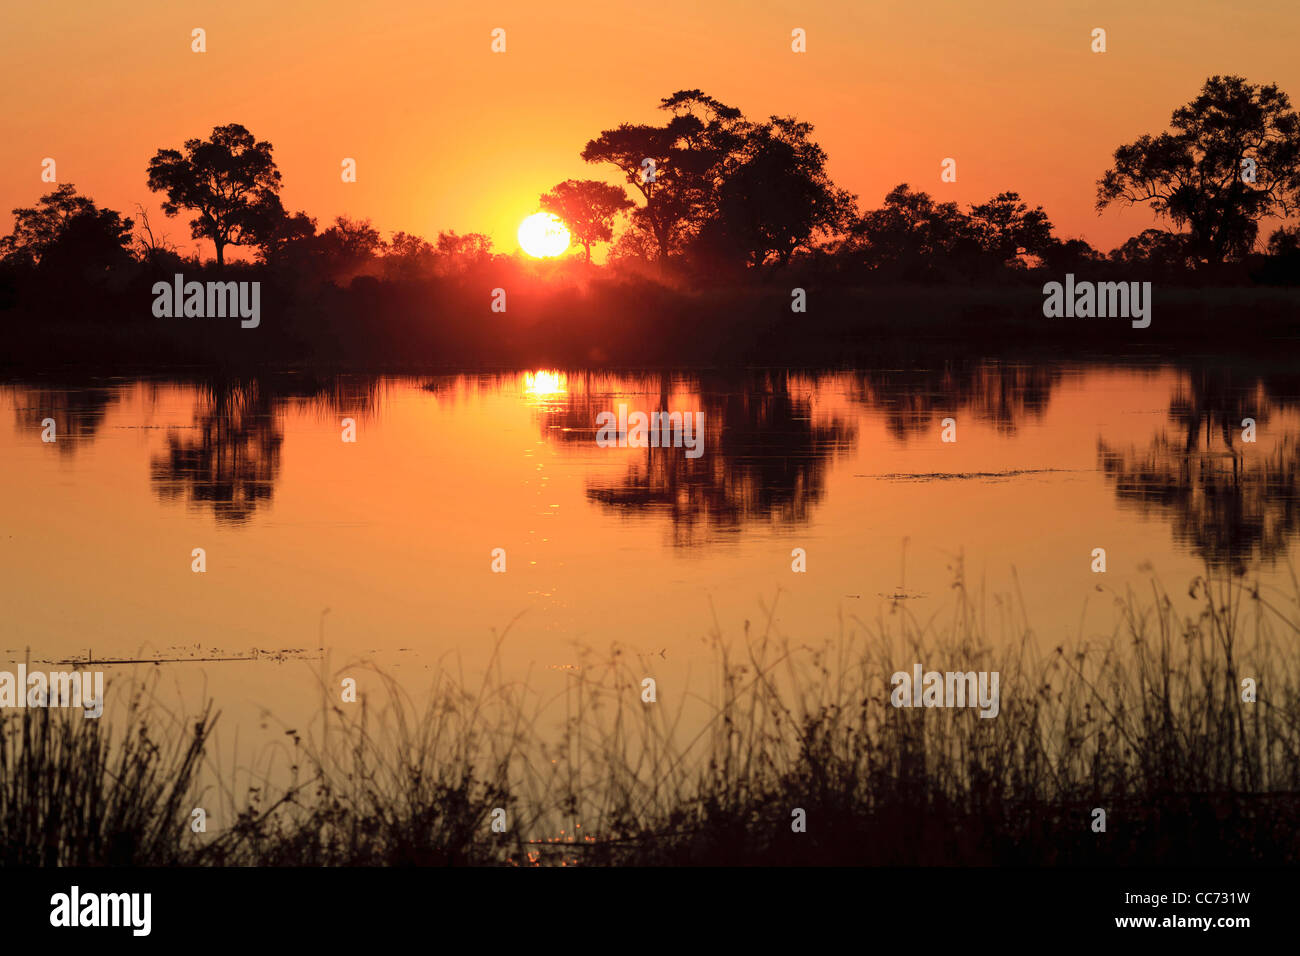 Dominierende Farbe orange bei typischen Sonnenuntergang im Okavango-delta Stockfoto